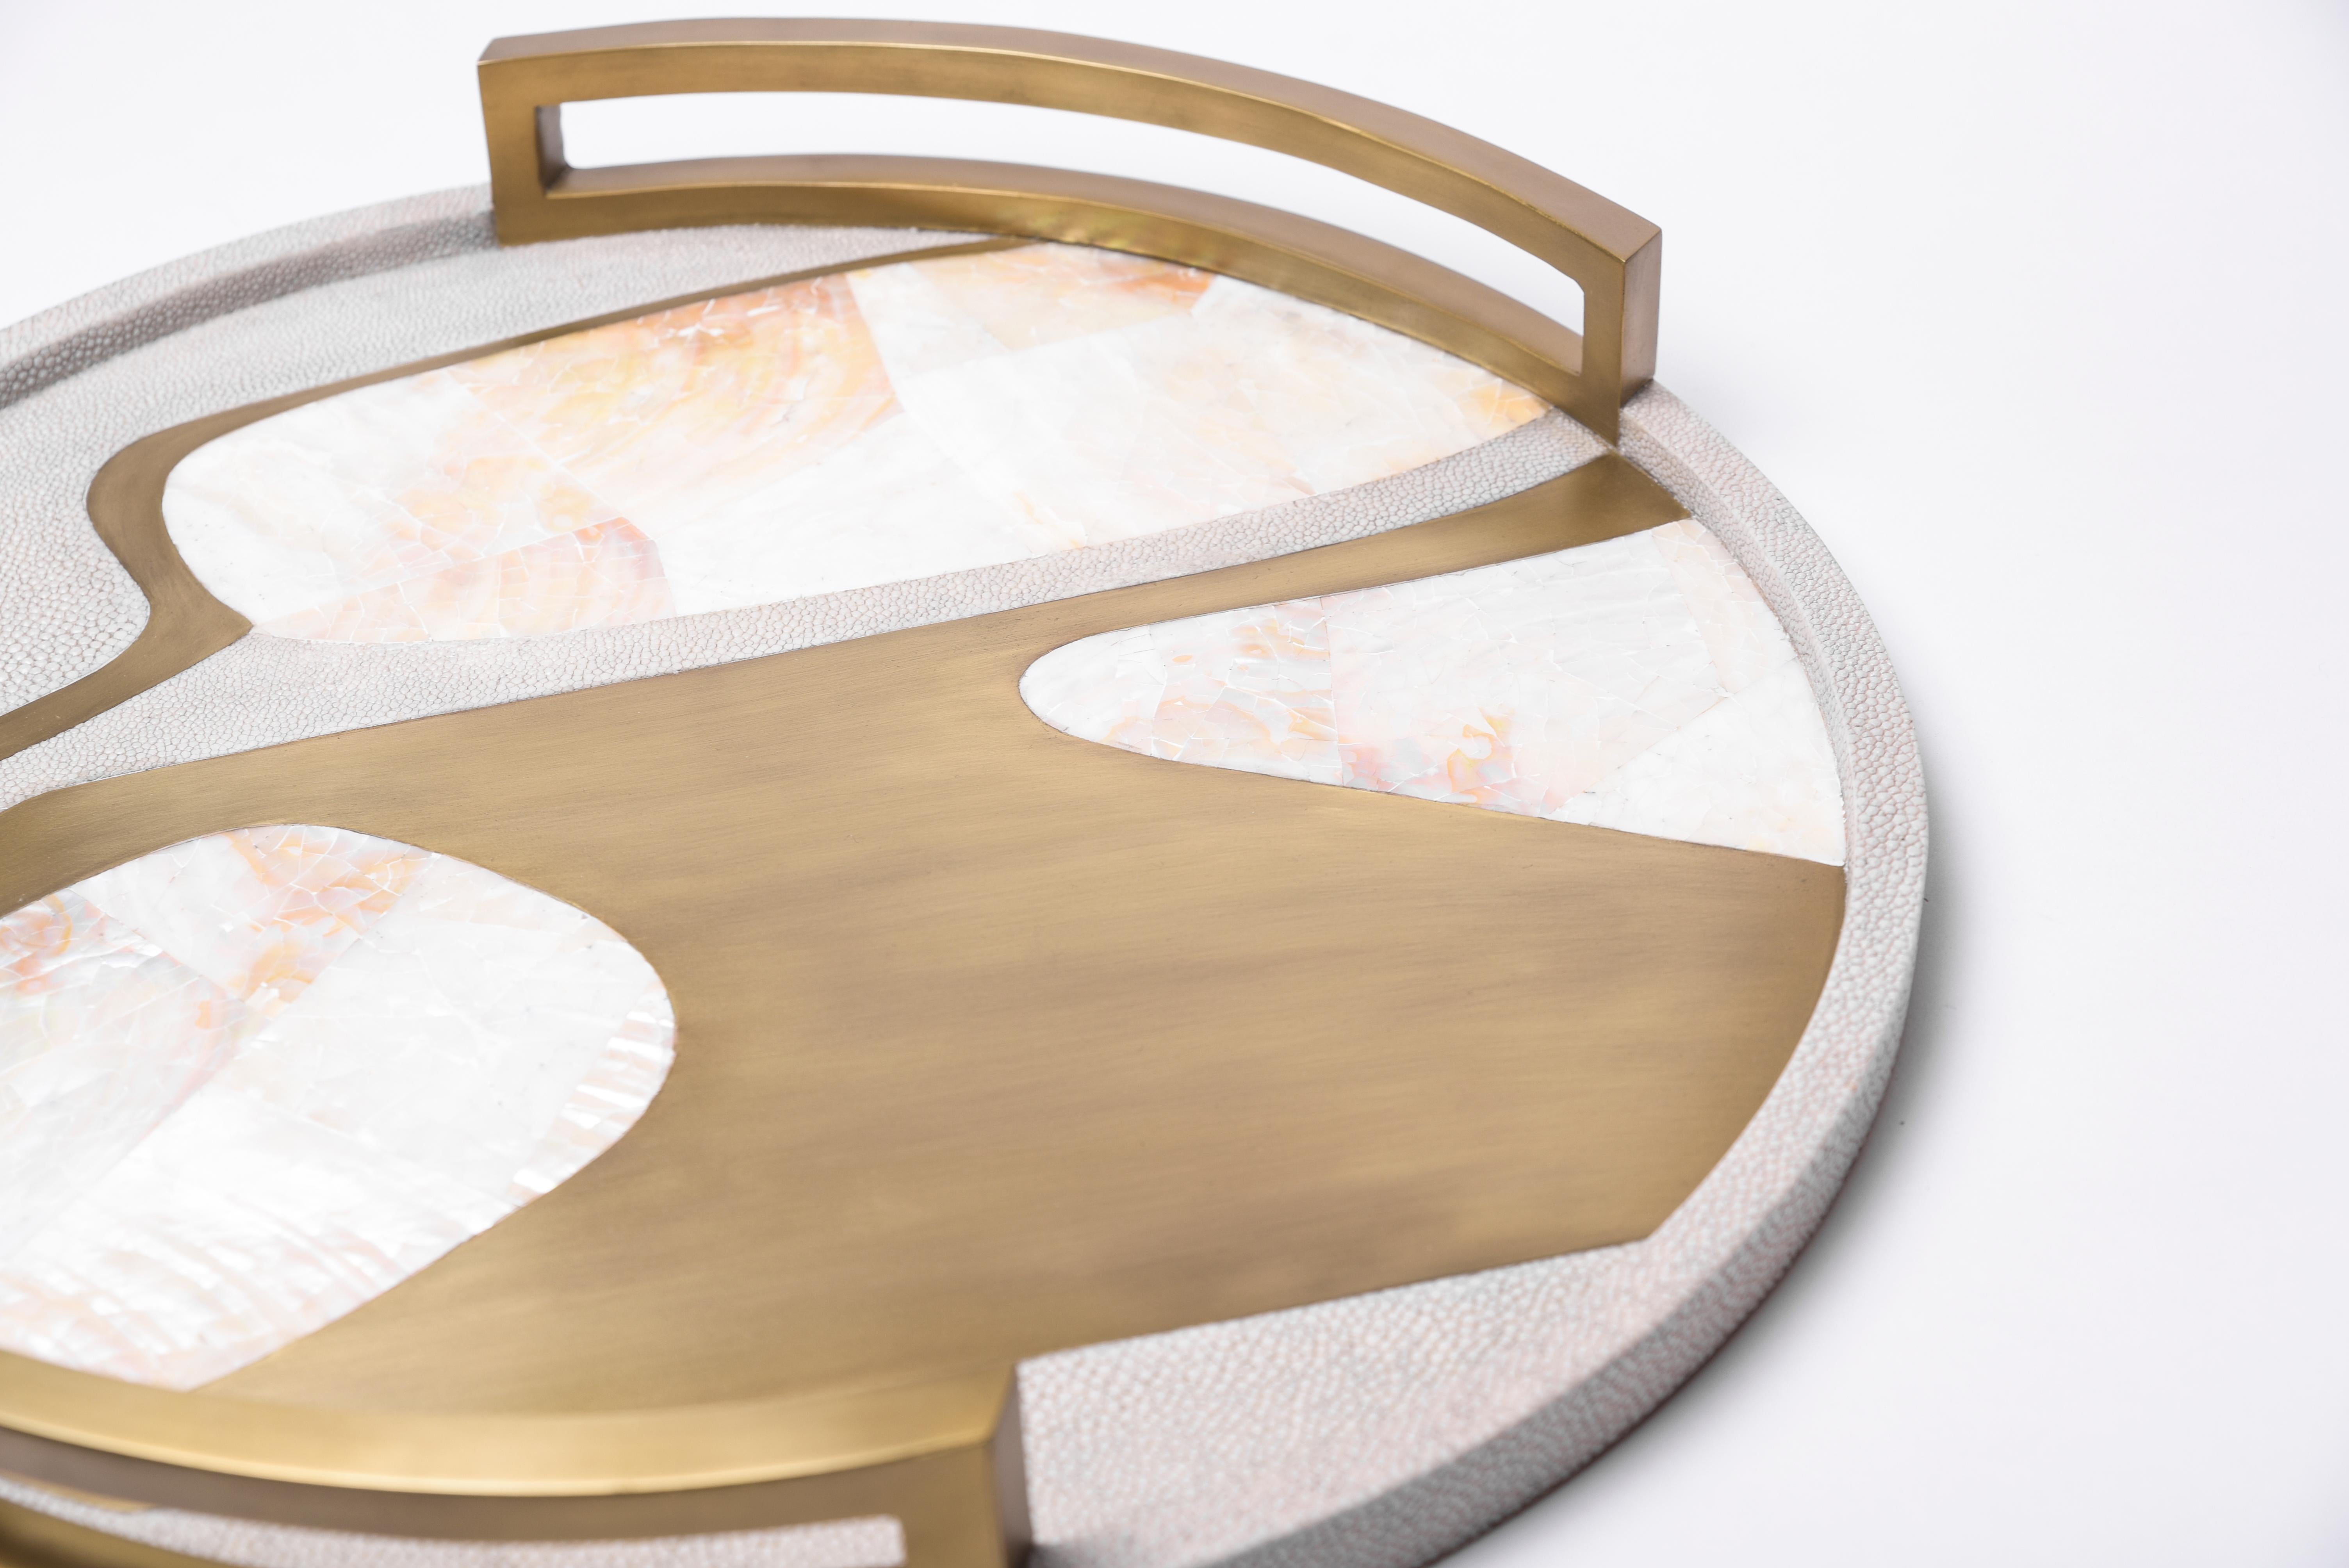 Le plateau circulaire Cosmos est une pièce de table étonnante pour tout espace. Disponible en couleur claire ou foncée, incrustée dans un mélange de galuchat, de coquille de stylo et de laiton bronze-patina.

- Mesures : 48.5 diamètre x 6,3